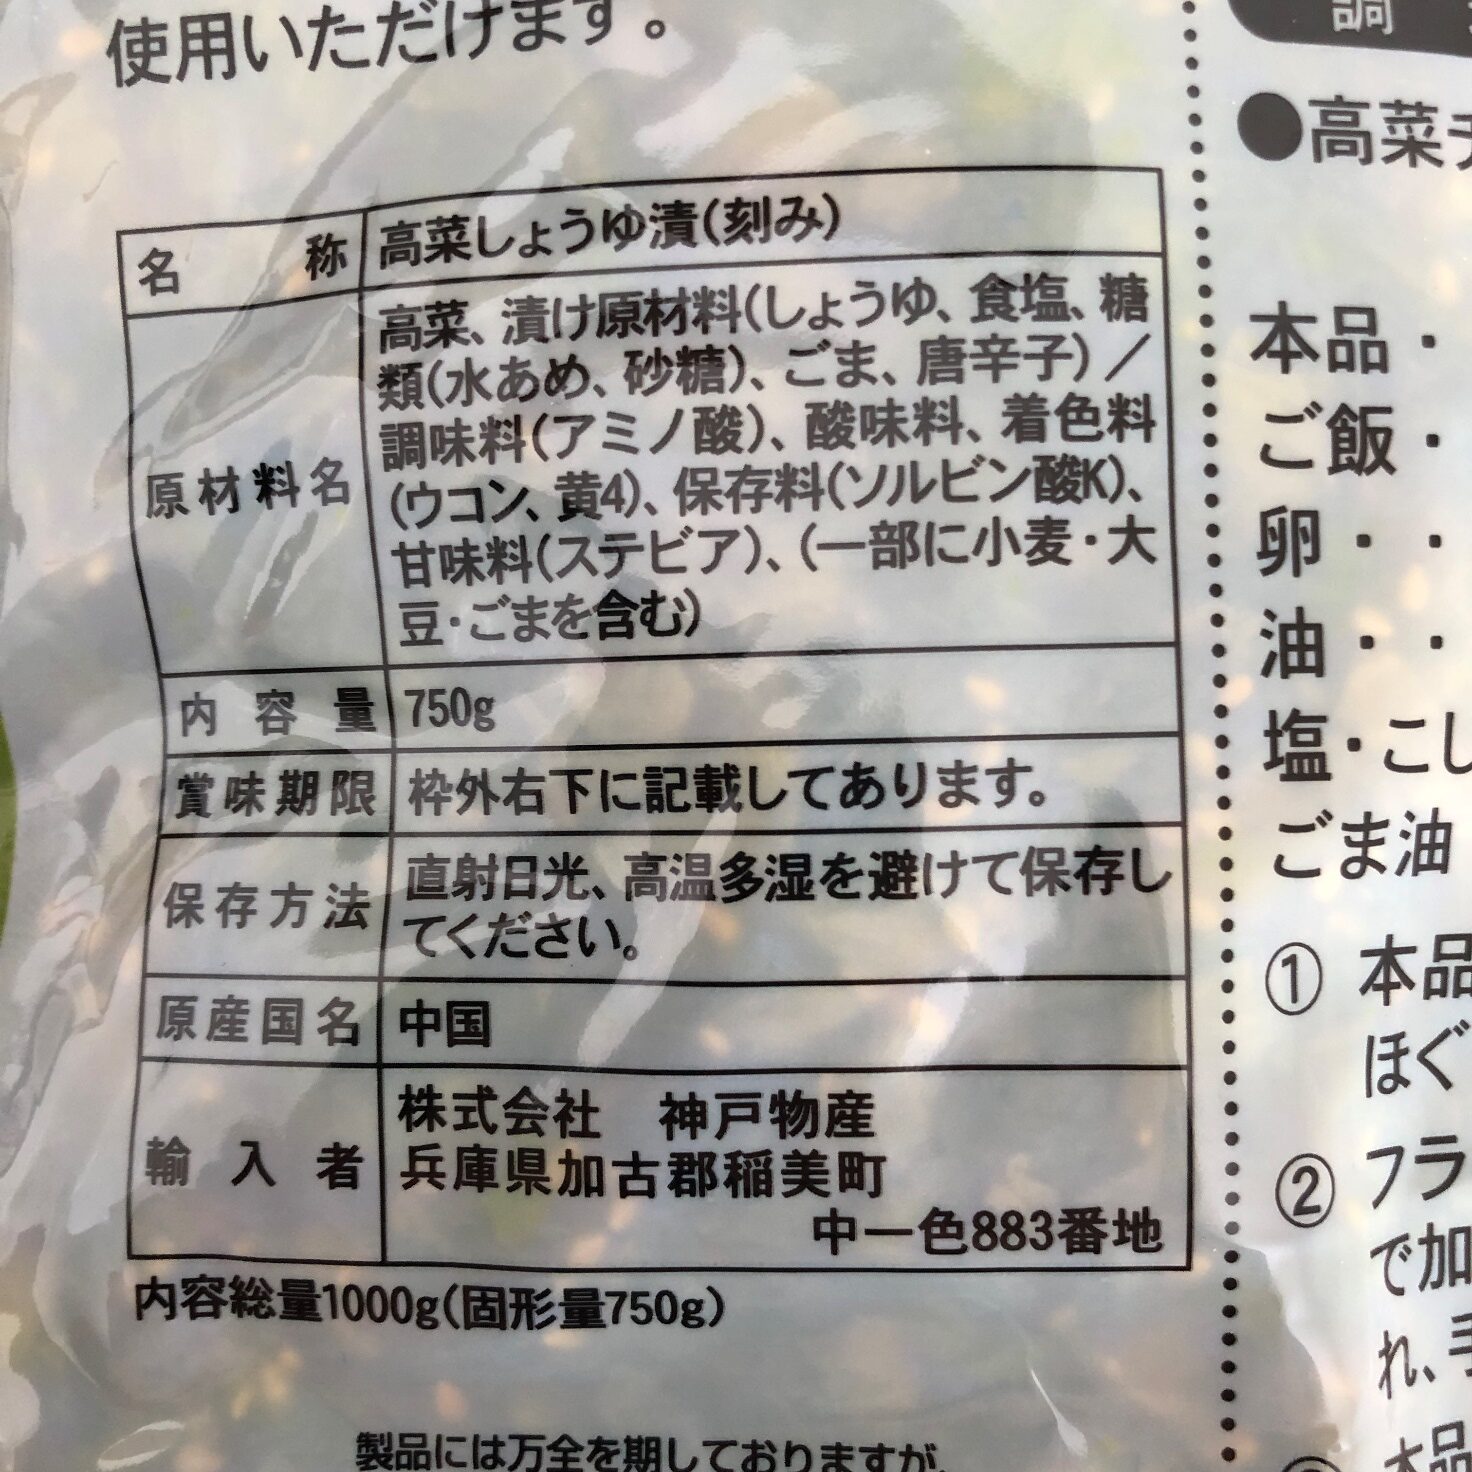 業務スーパーの高菜漬けのパッケージに記載されている原材料名と原産国名